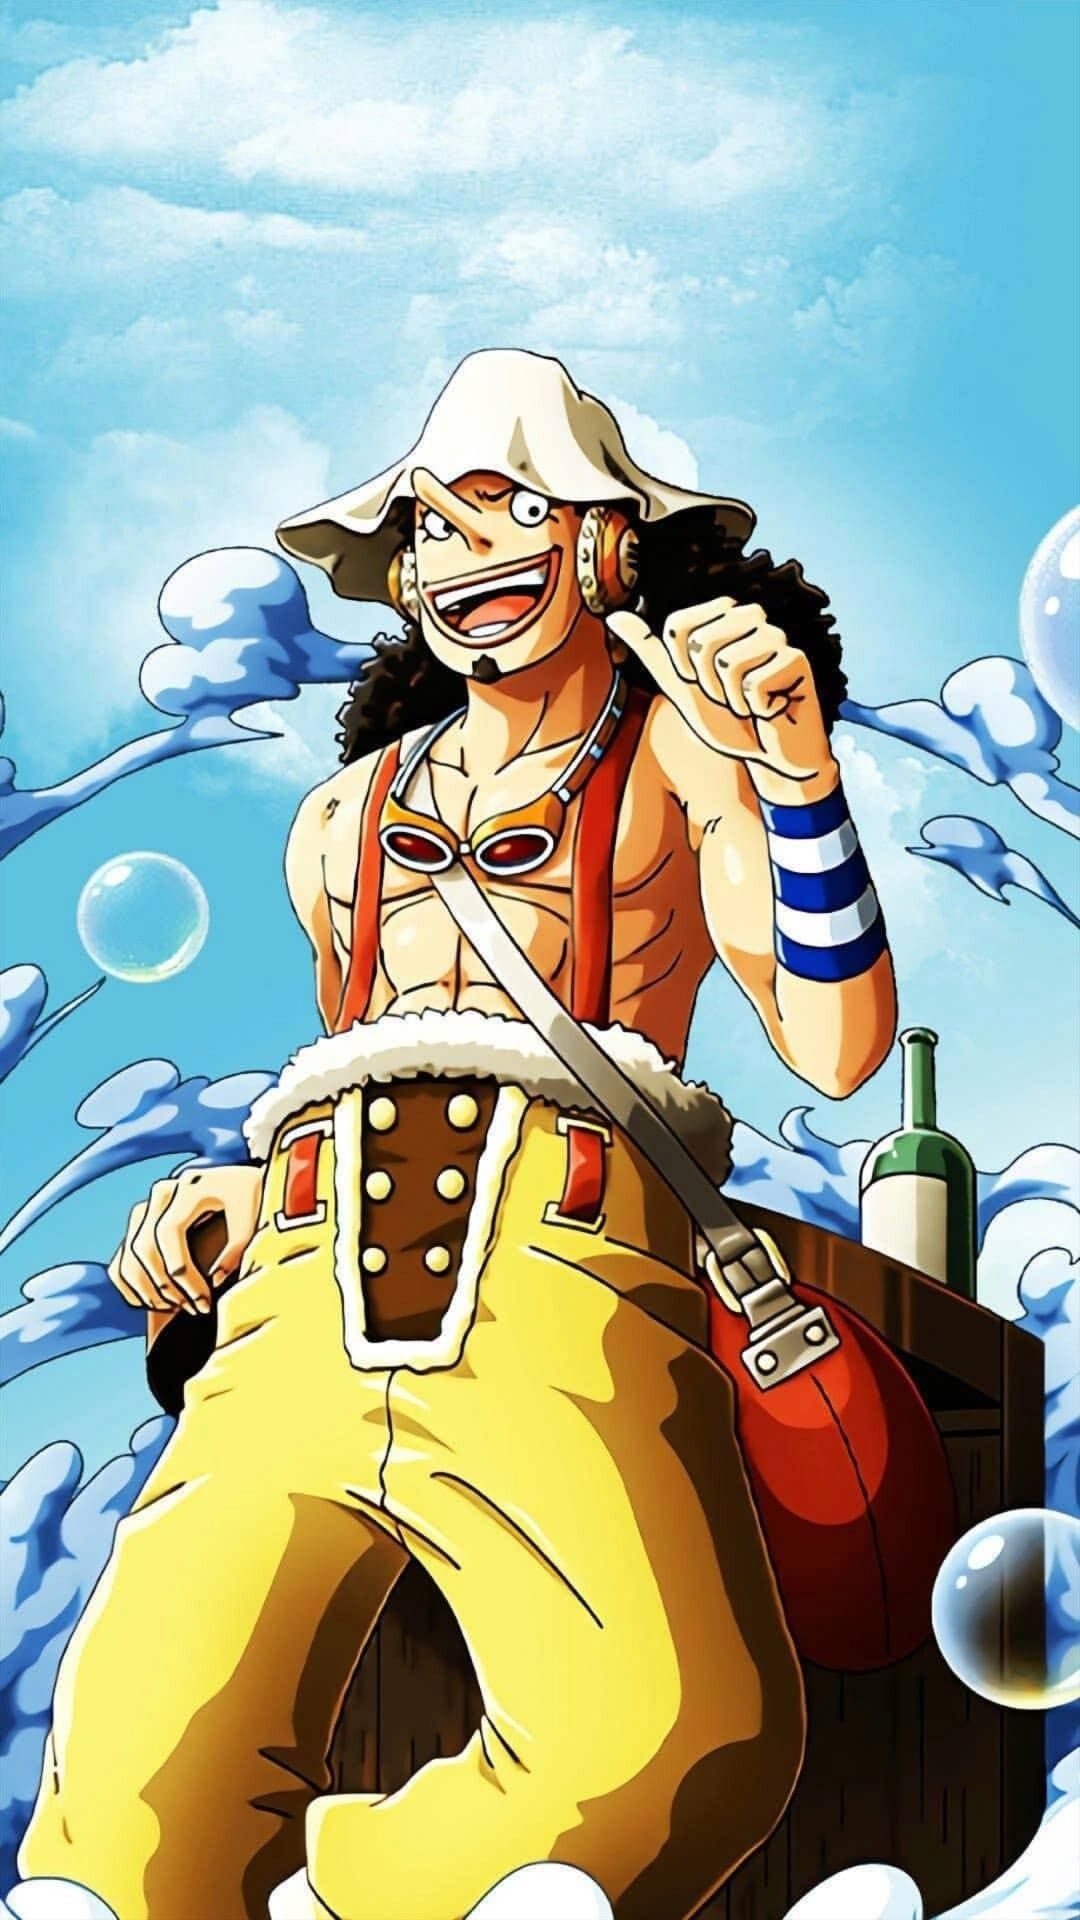 Nếu bạn là fan của One Piece, bạn không thể bỏ qua hình nền Usopp đẹp mắt này! Hãy đến và trang trí cho máy tính của bạn với hình ảnh đầy sáng tạo và sự vui nhộn của nhân vật này.